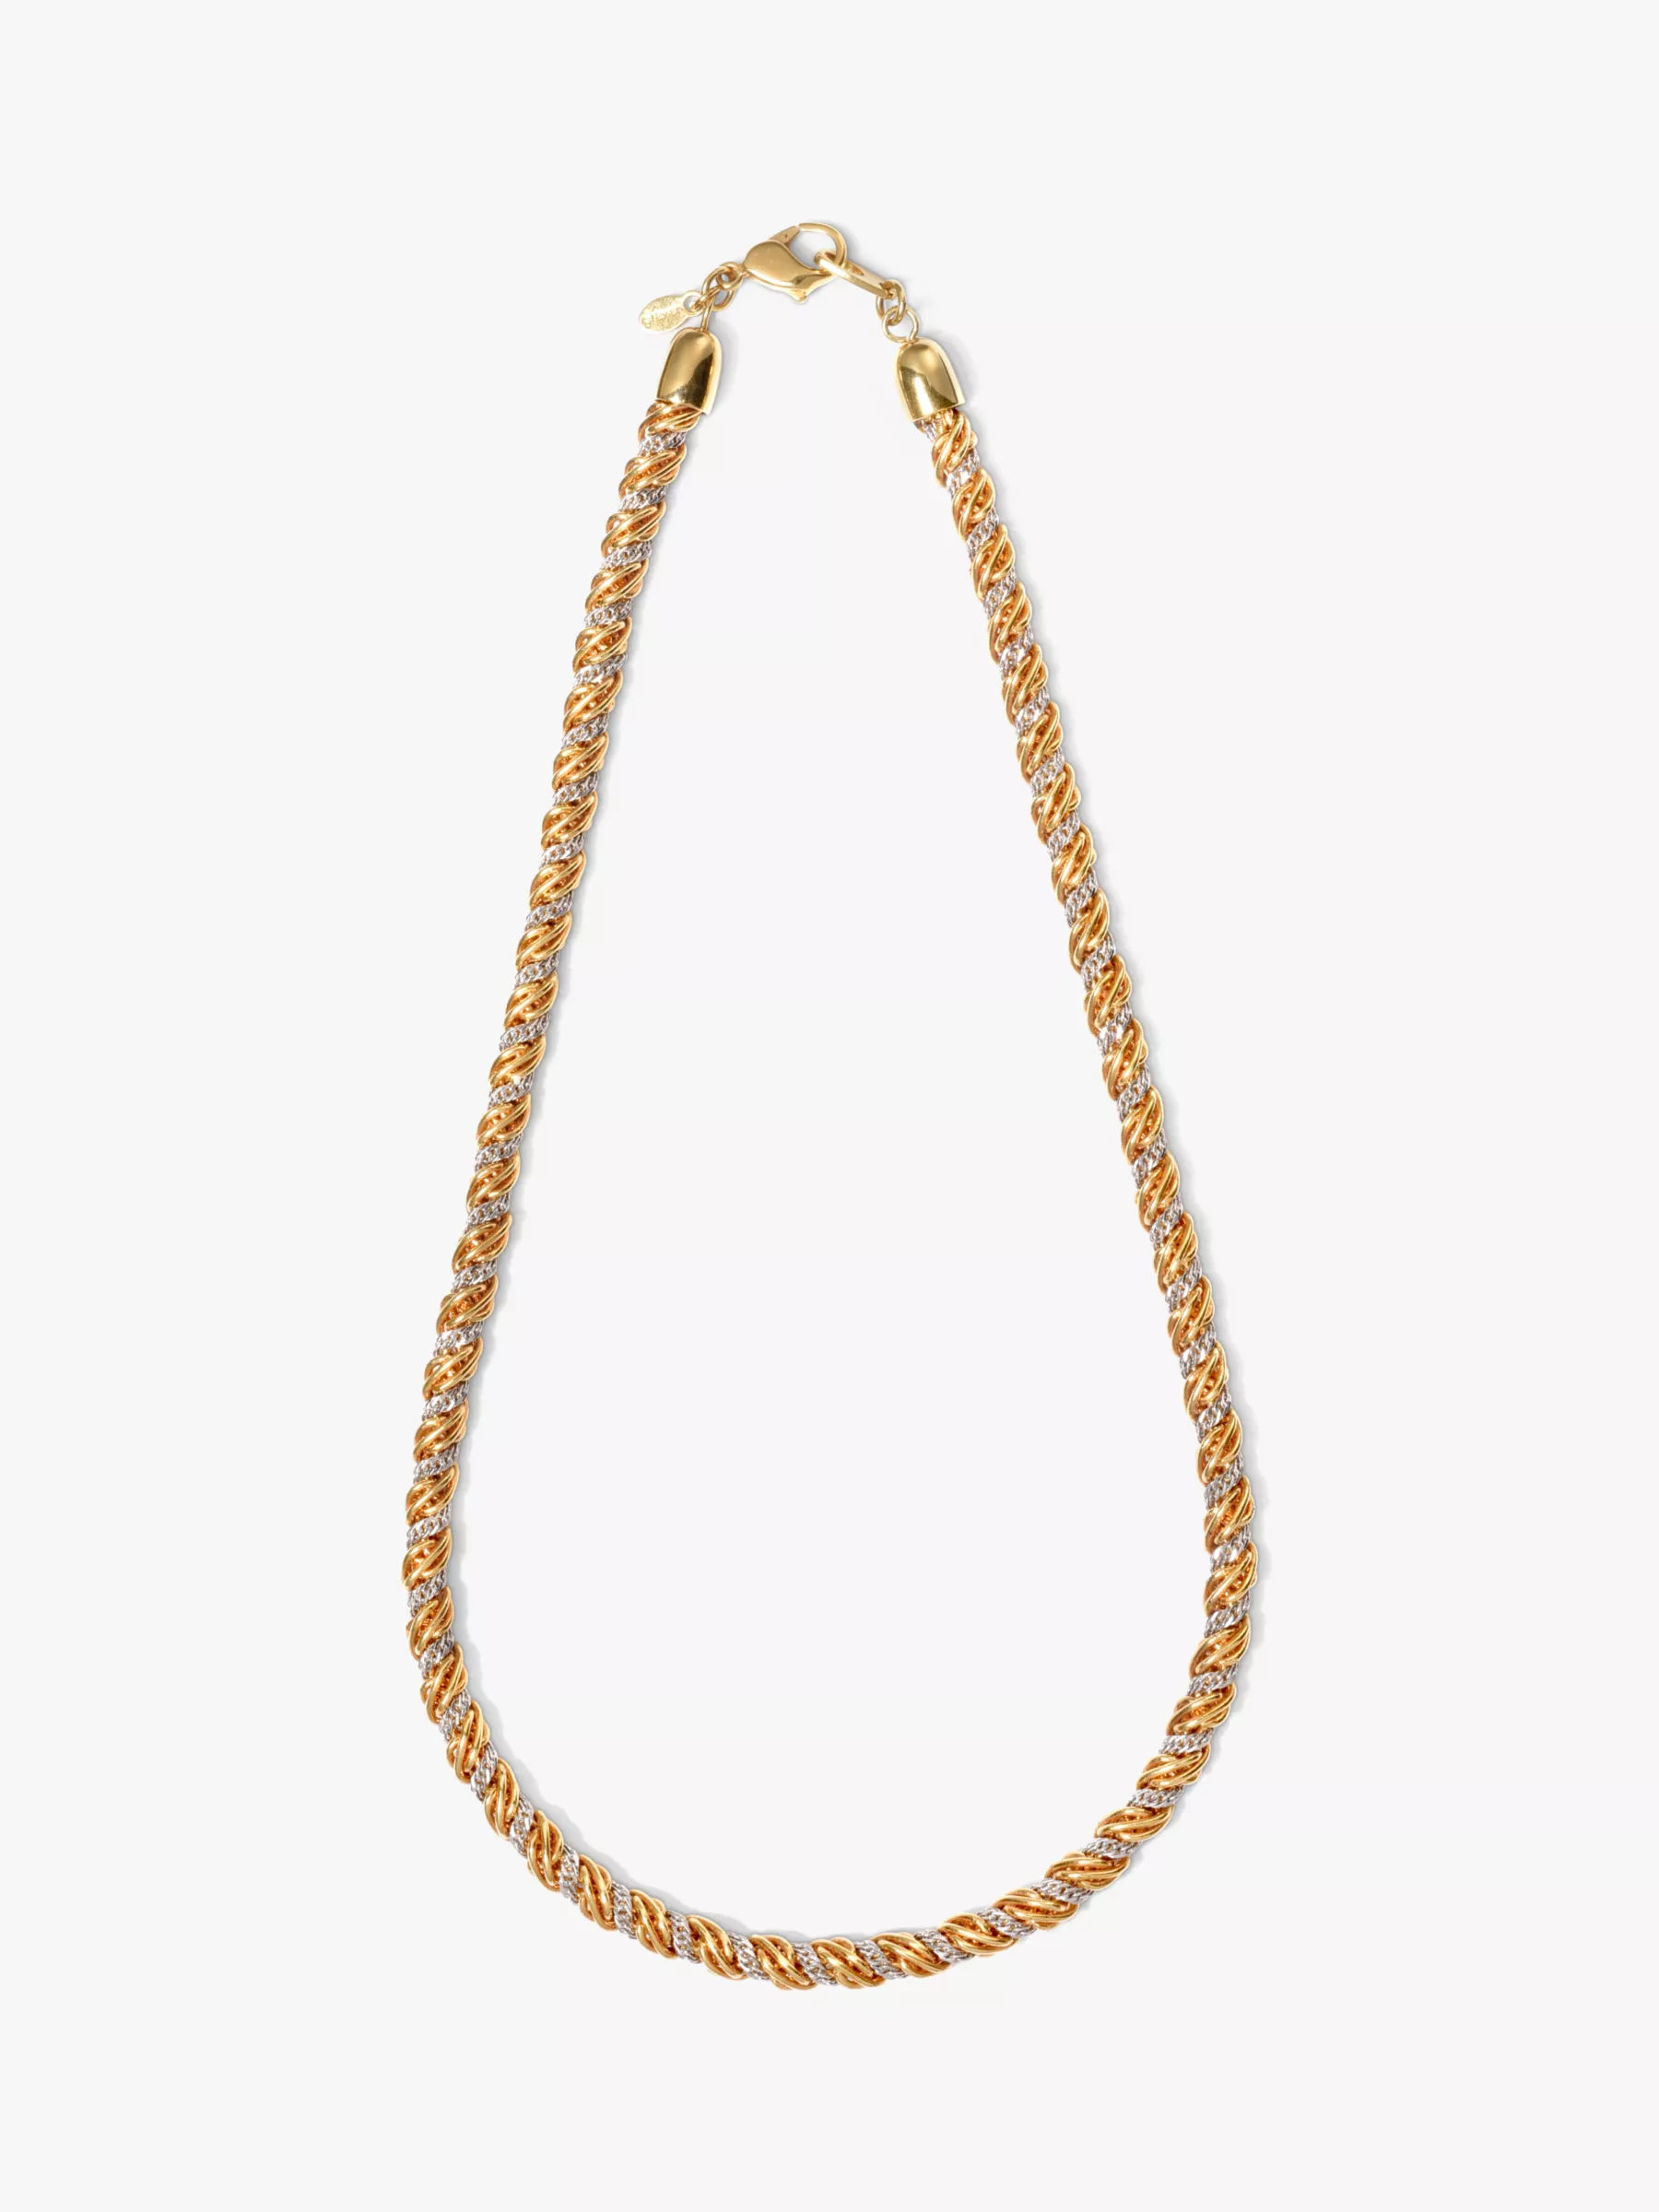 Vintage Monet Gold Tone 2-Chain Necklace 55